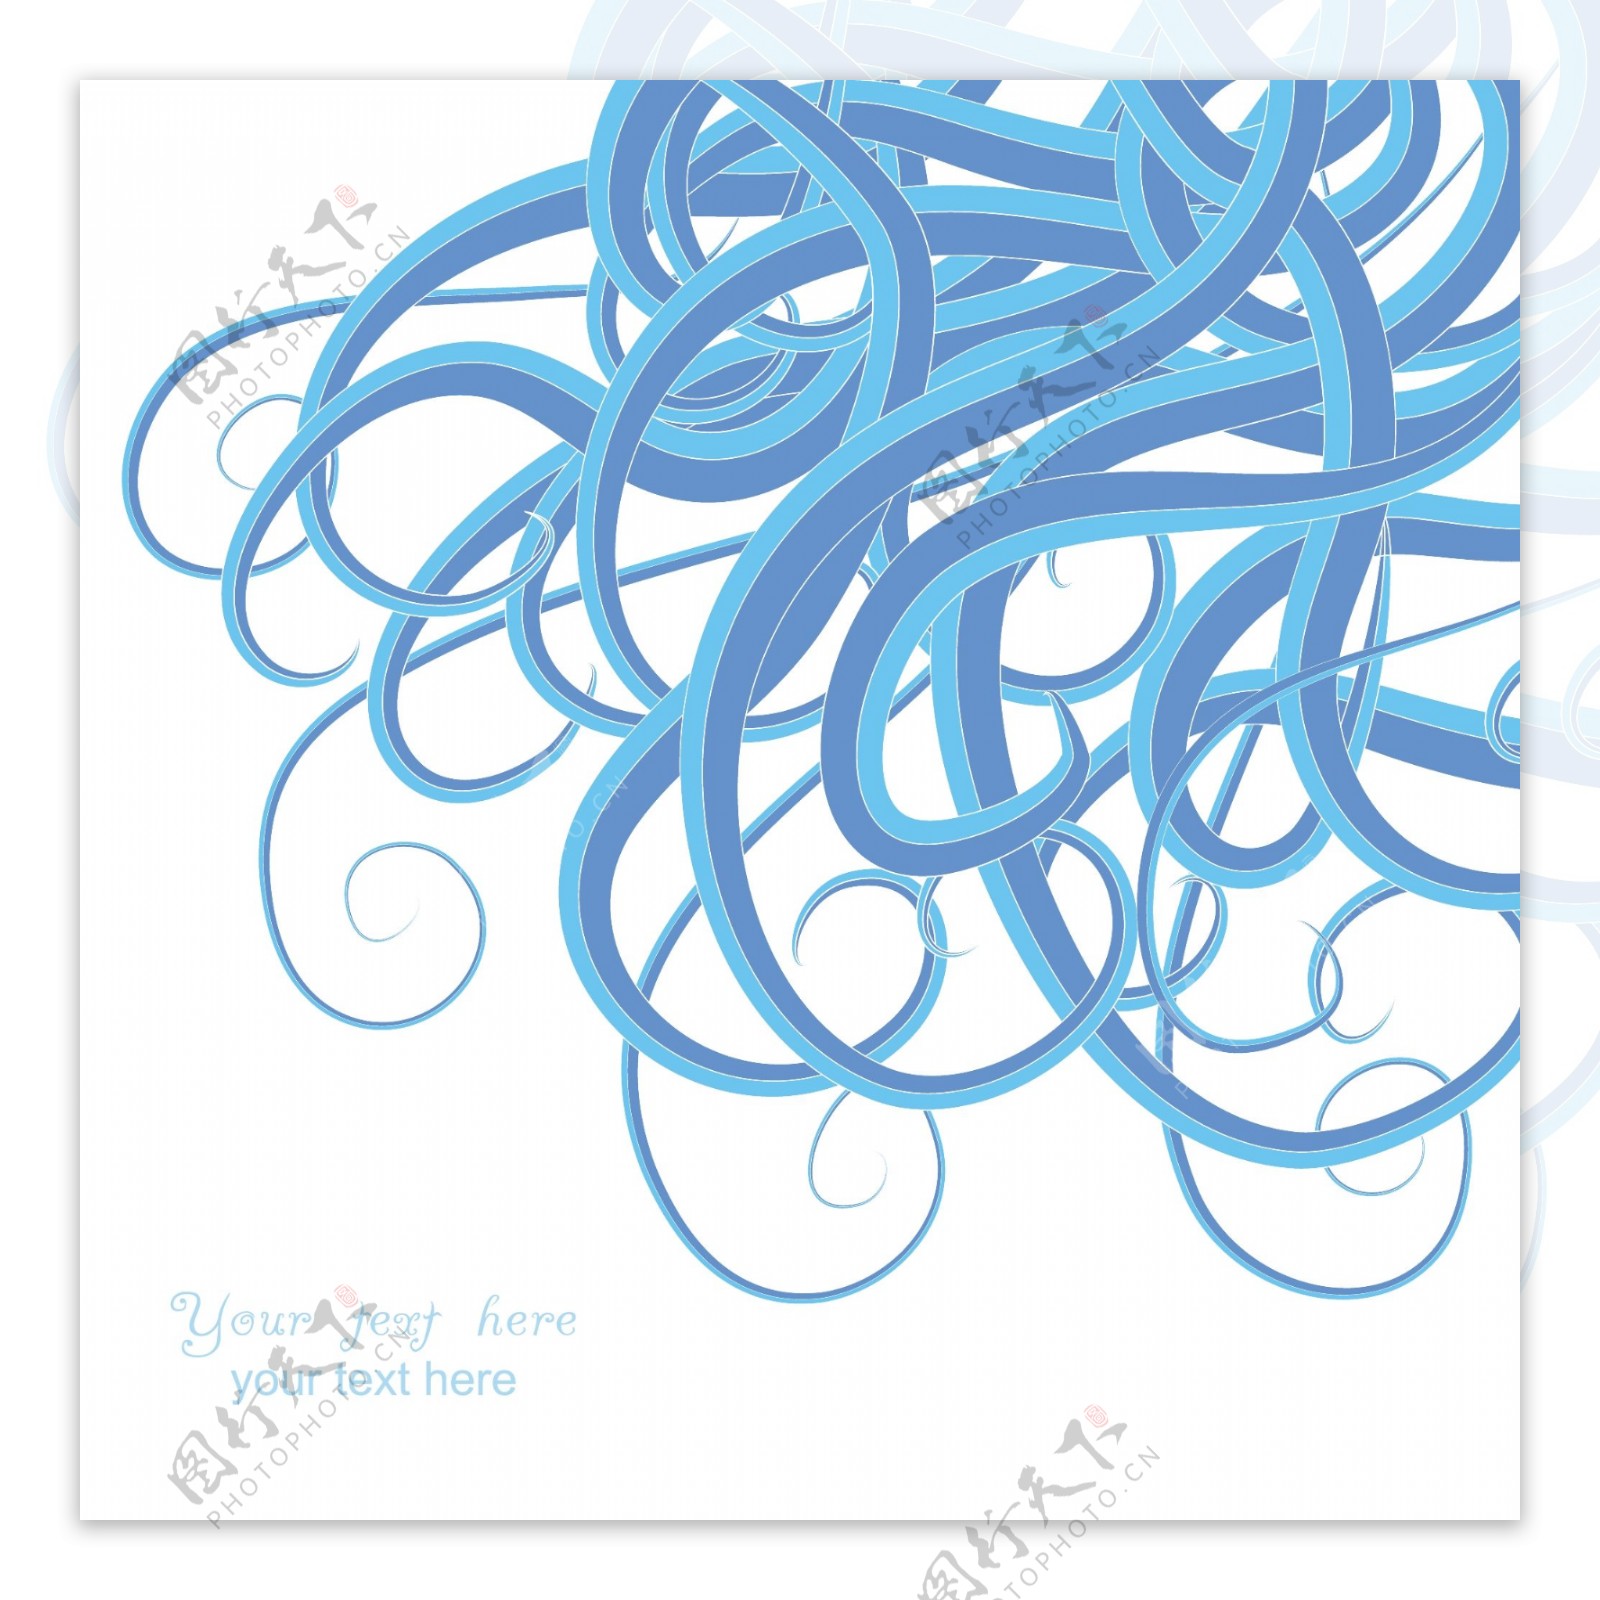 波的例子看起来像线条交织纱关门卡海洋主题时尚模板波形设计